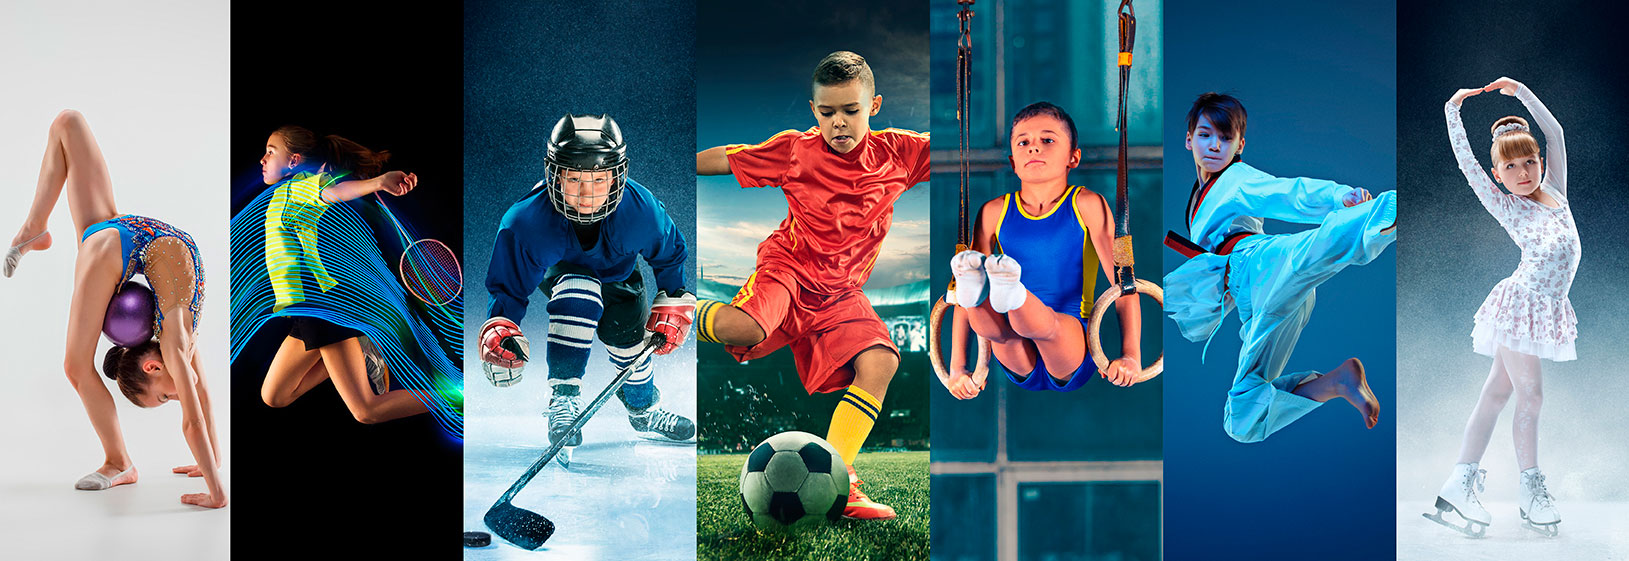 diete per bambini e ragazzi che fanno sport a livello agonistico: atletica, tennis, hockey, calcio, anelli, arti marziali, danza